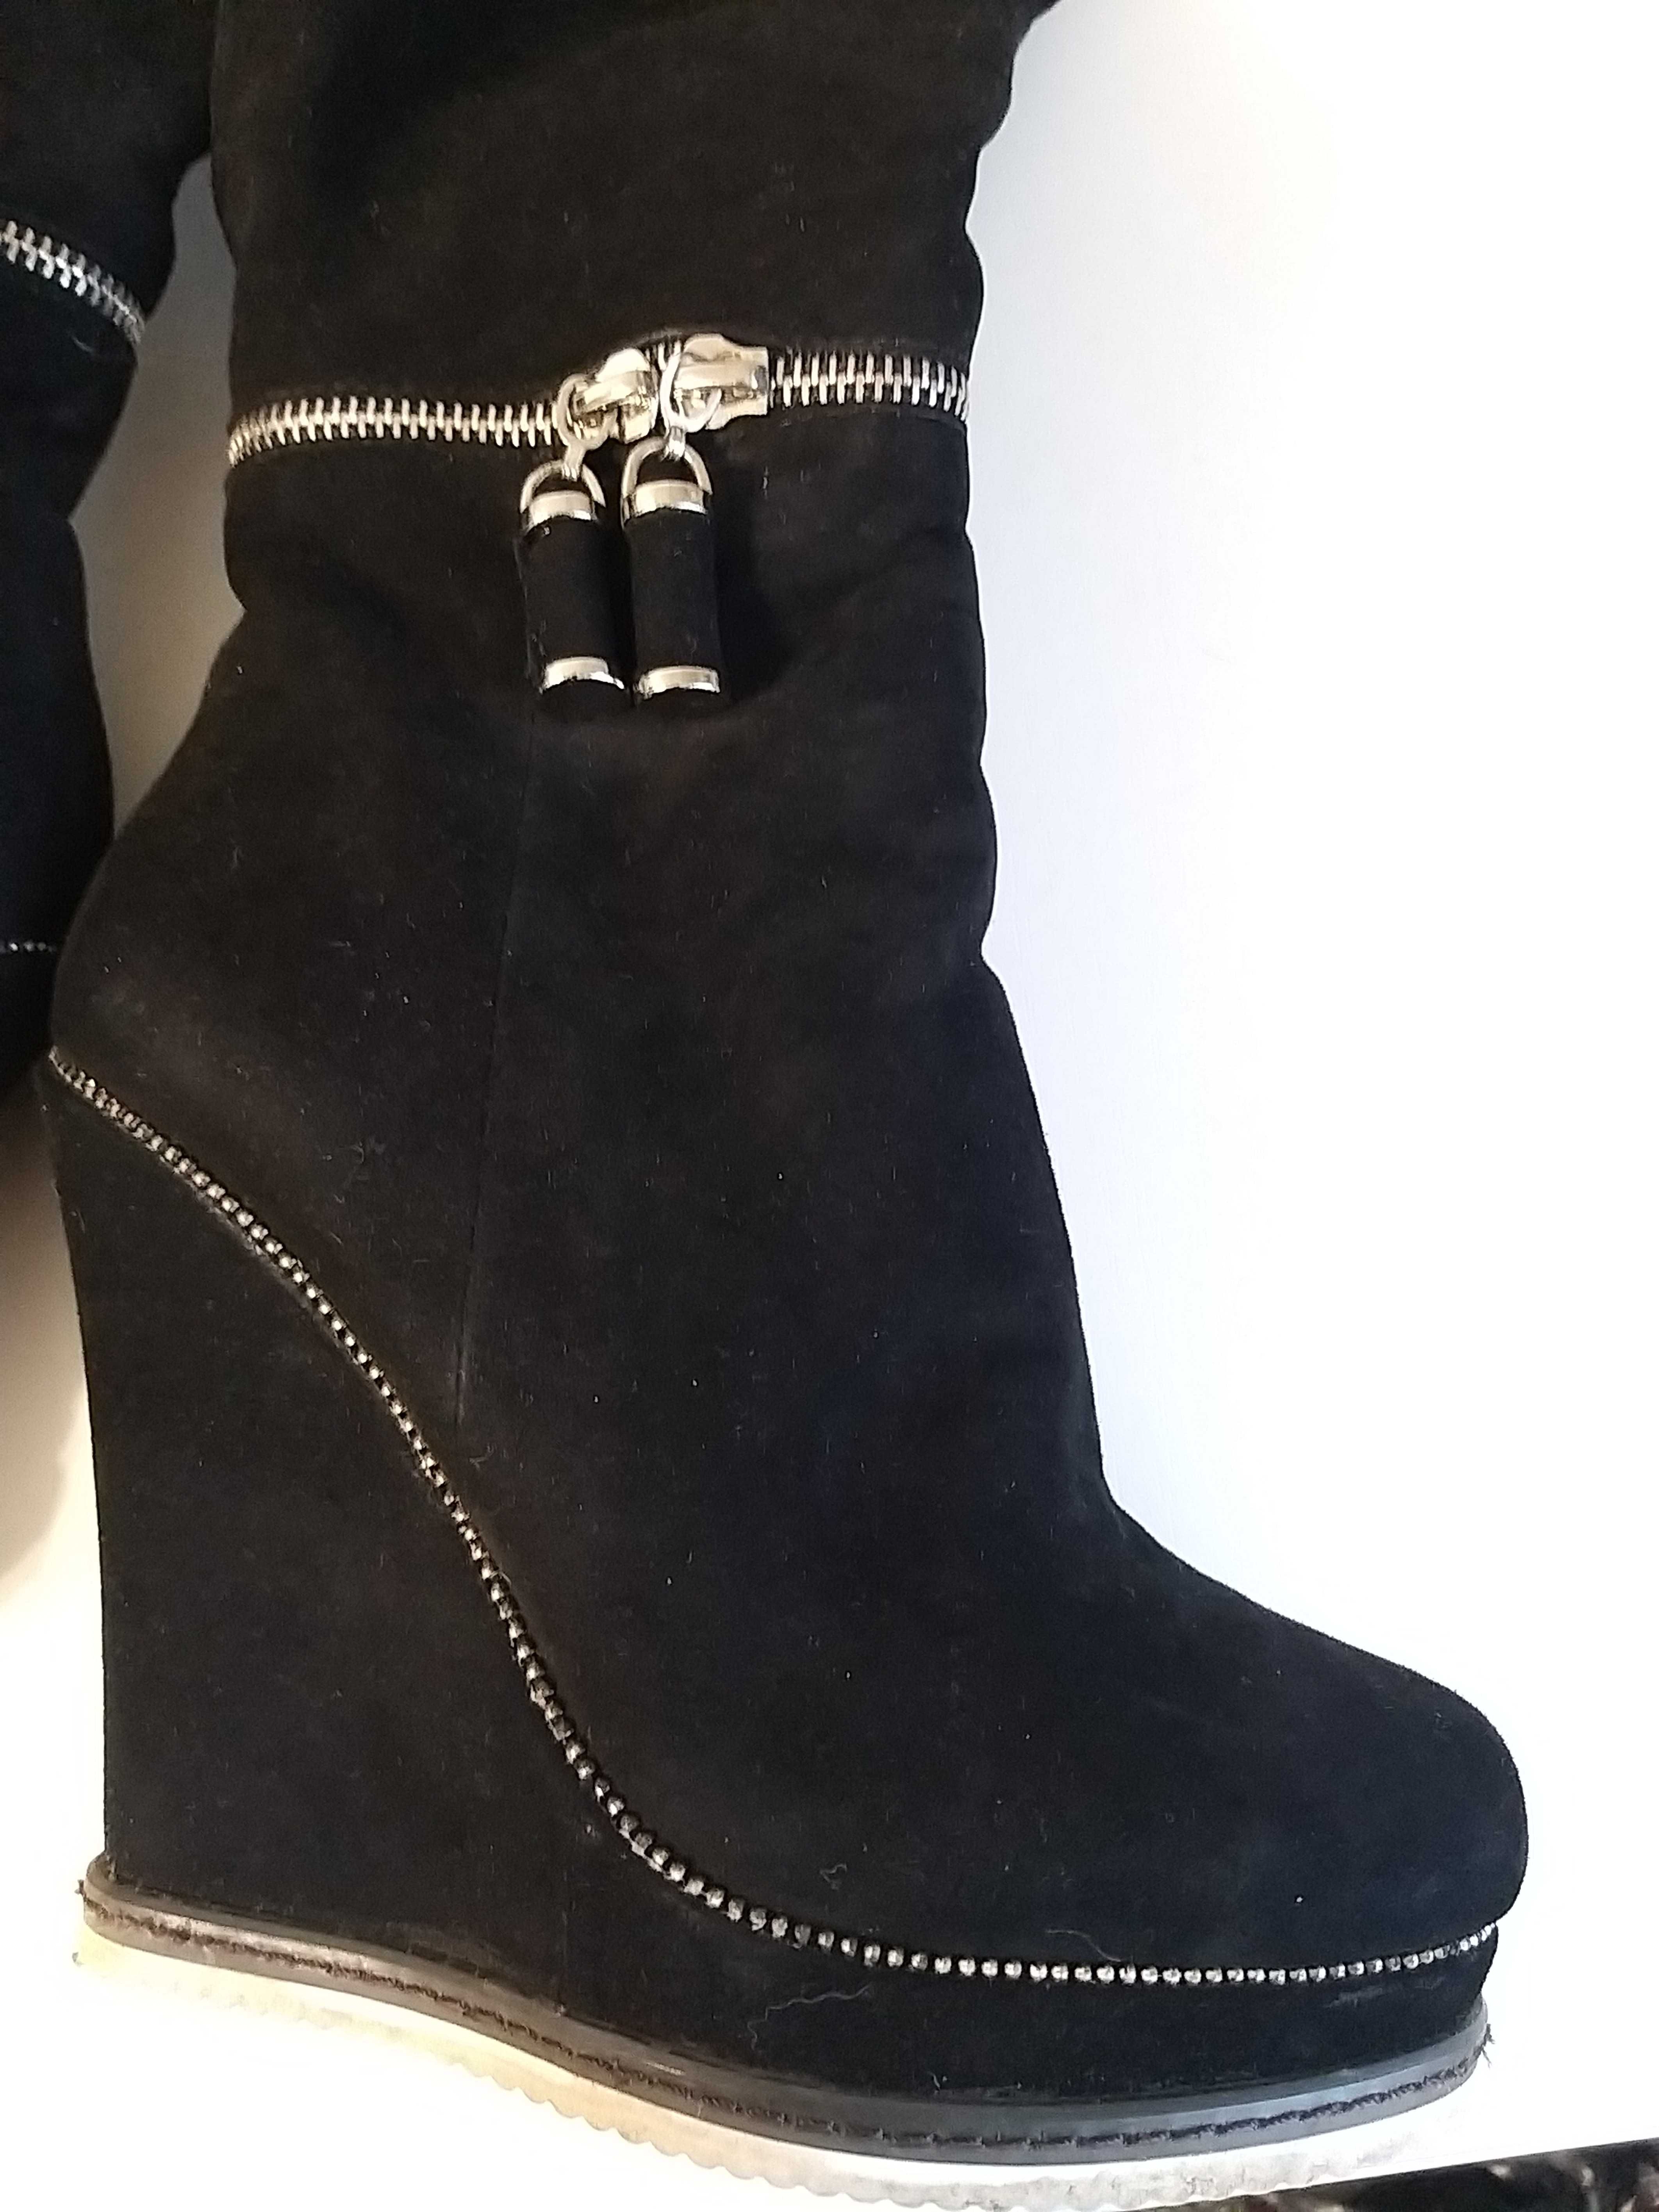 Сапоги итальянские зимние Basilia /обувь, взуття, чоботи